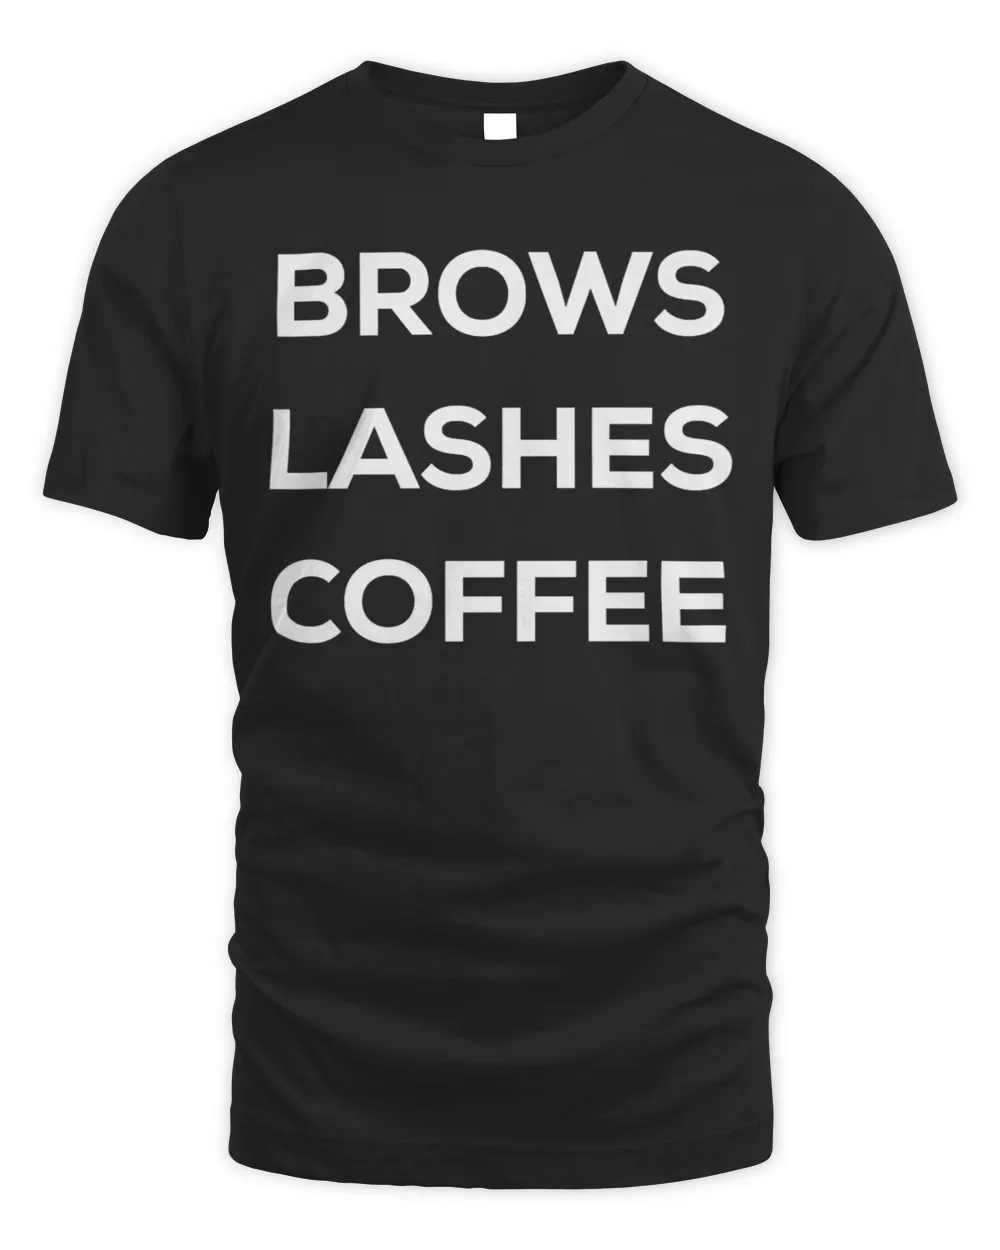 Eyebrow microblading, eyelash extensions, coffee tshirt